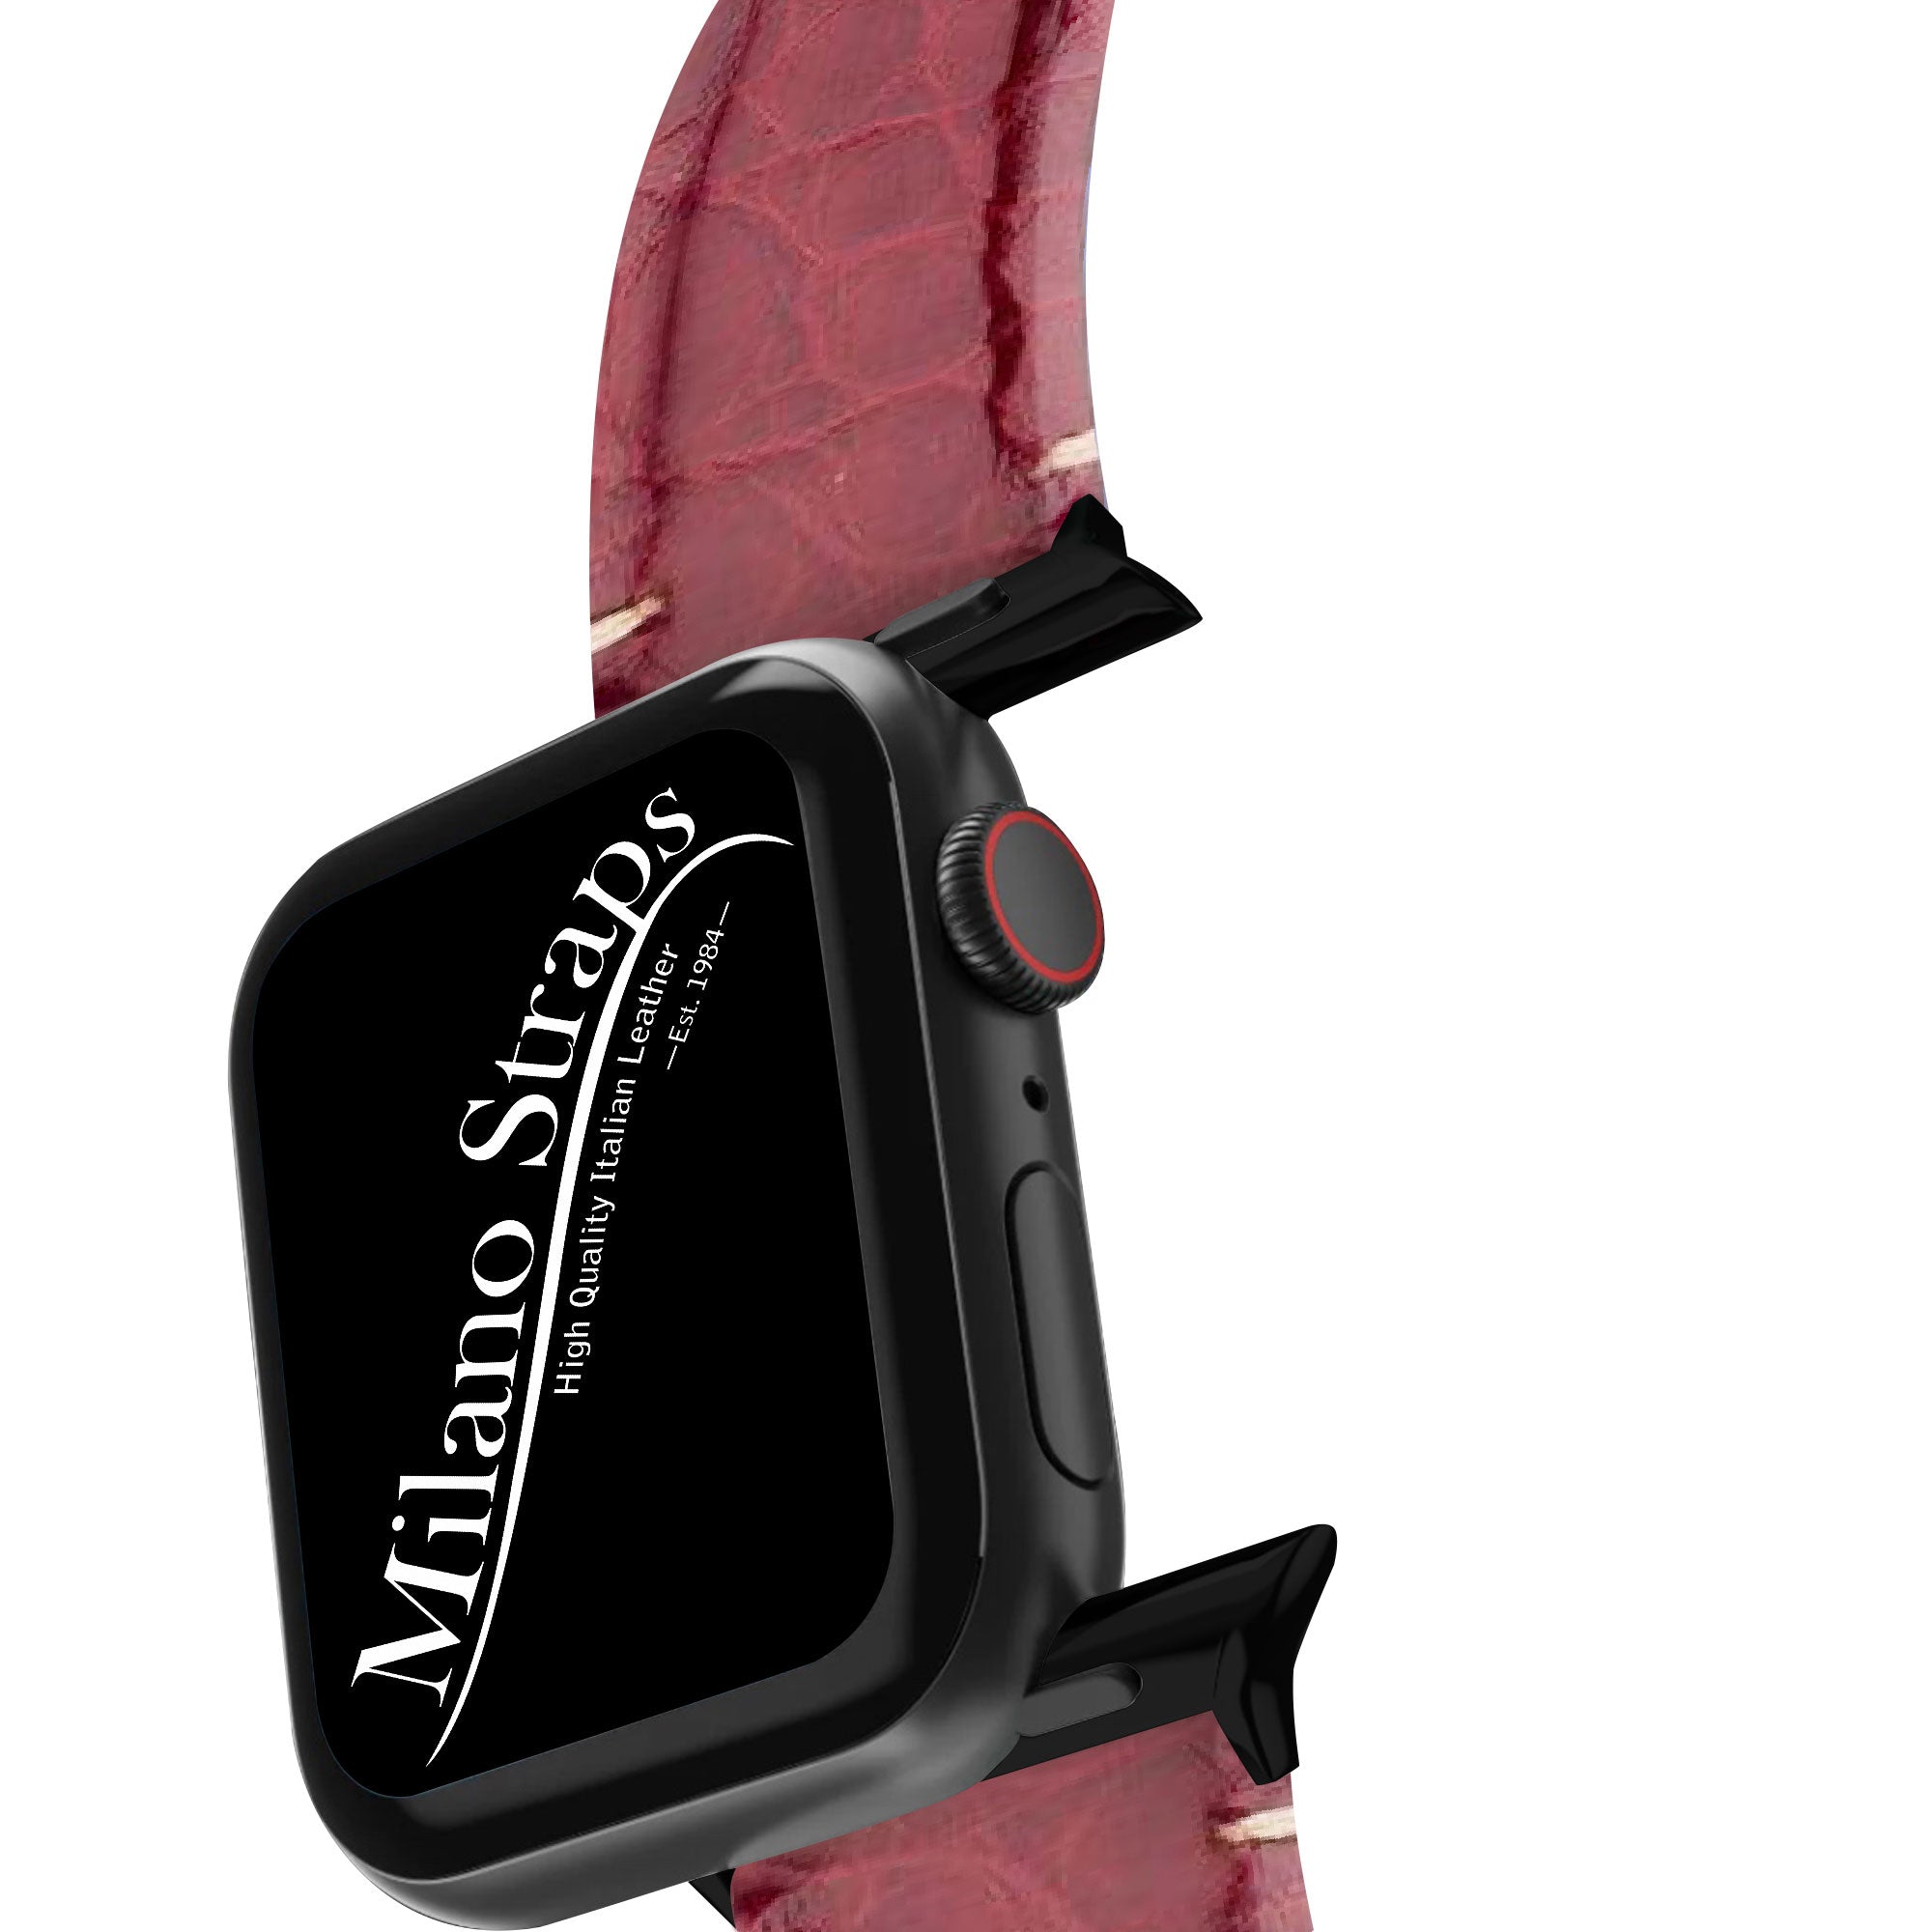 Apple Watch Leather Band ™ Burgundy Millennium Alligator Minimal Stitches Watch Band - Milano Straps